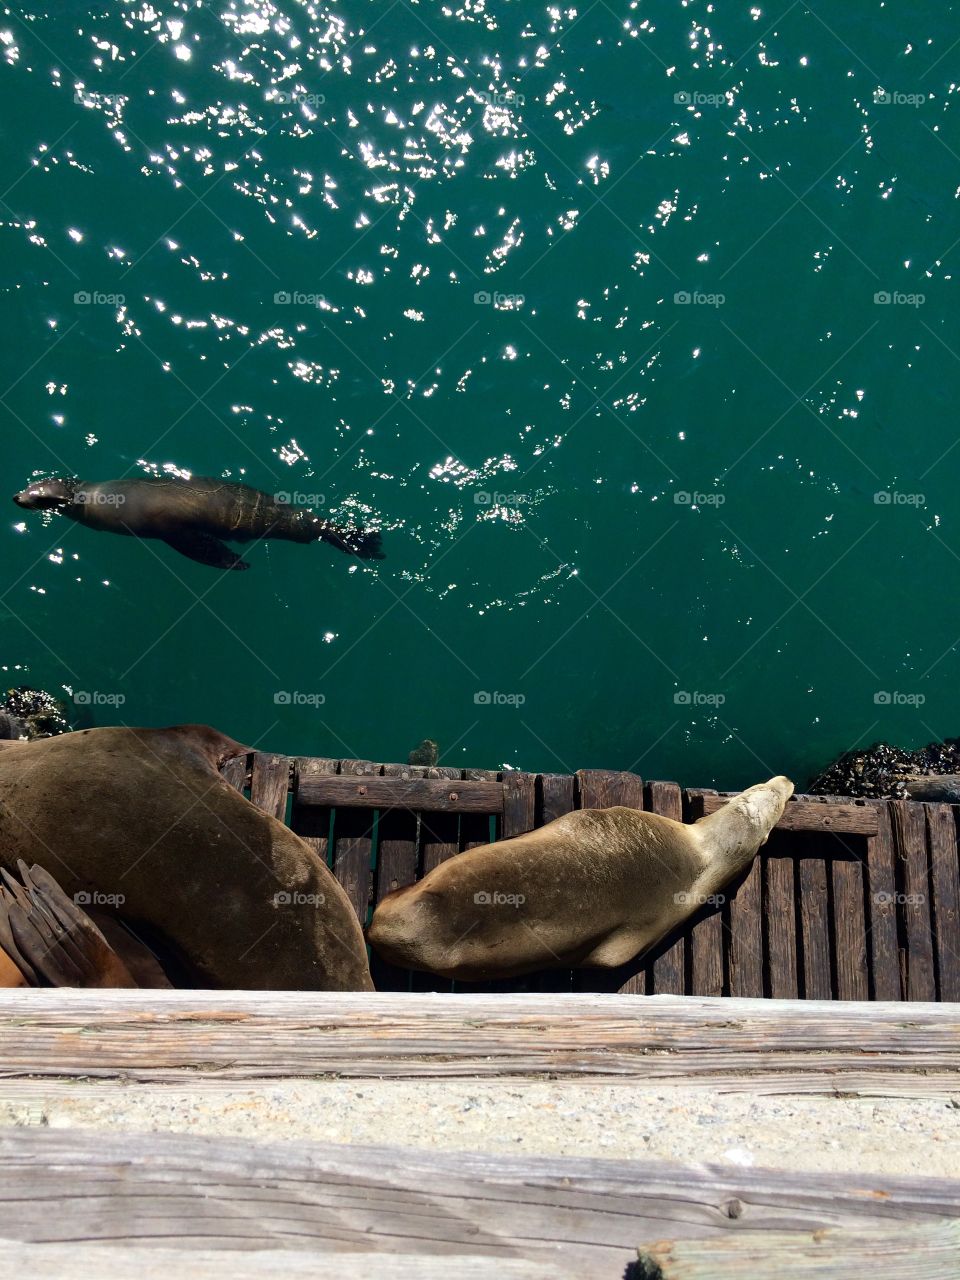 Seals. Seals